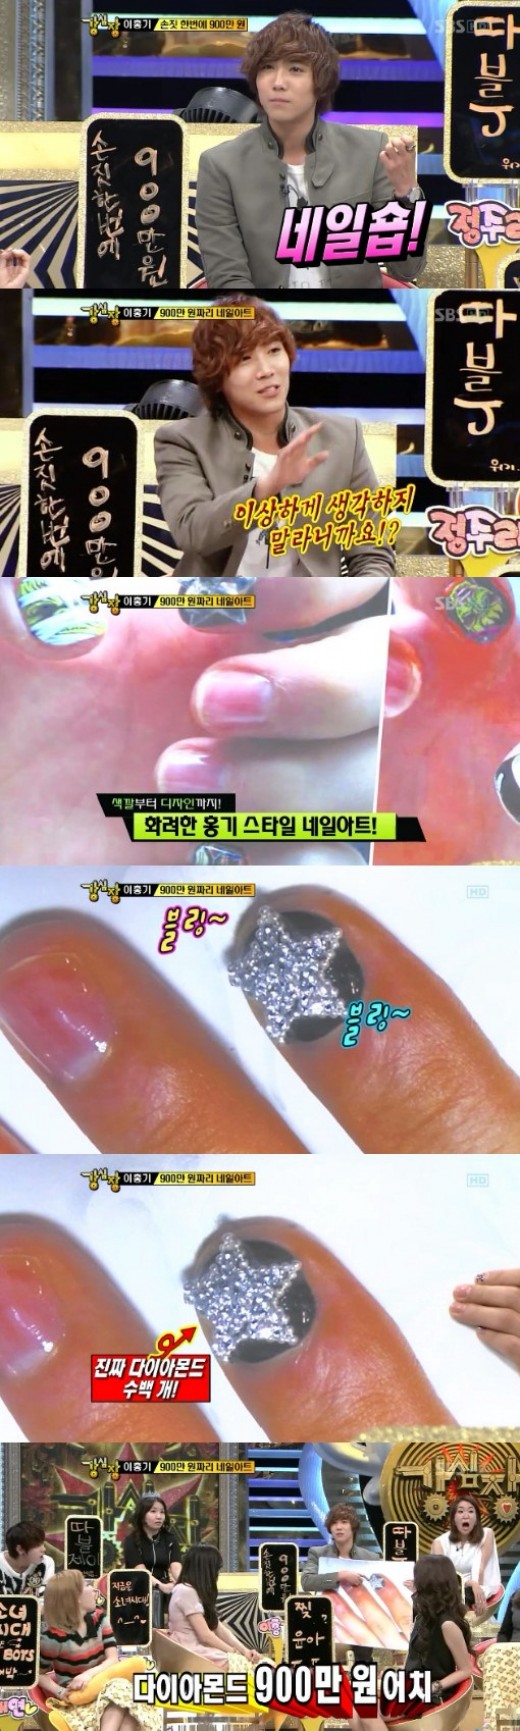 이홍기, 다이아몬드 수백개 900만원 짜리 네일아트 공개 ‘경악’